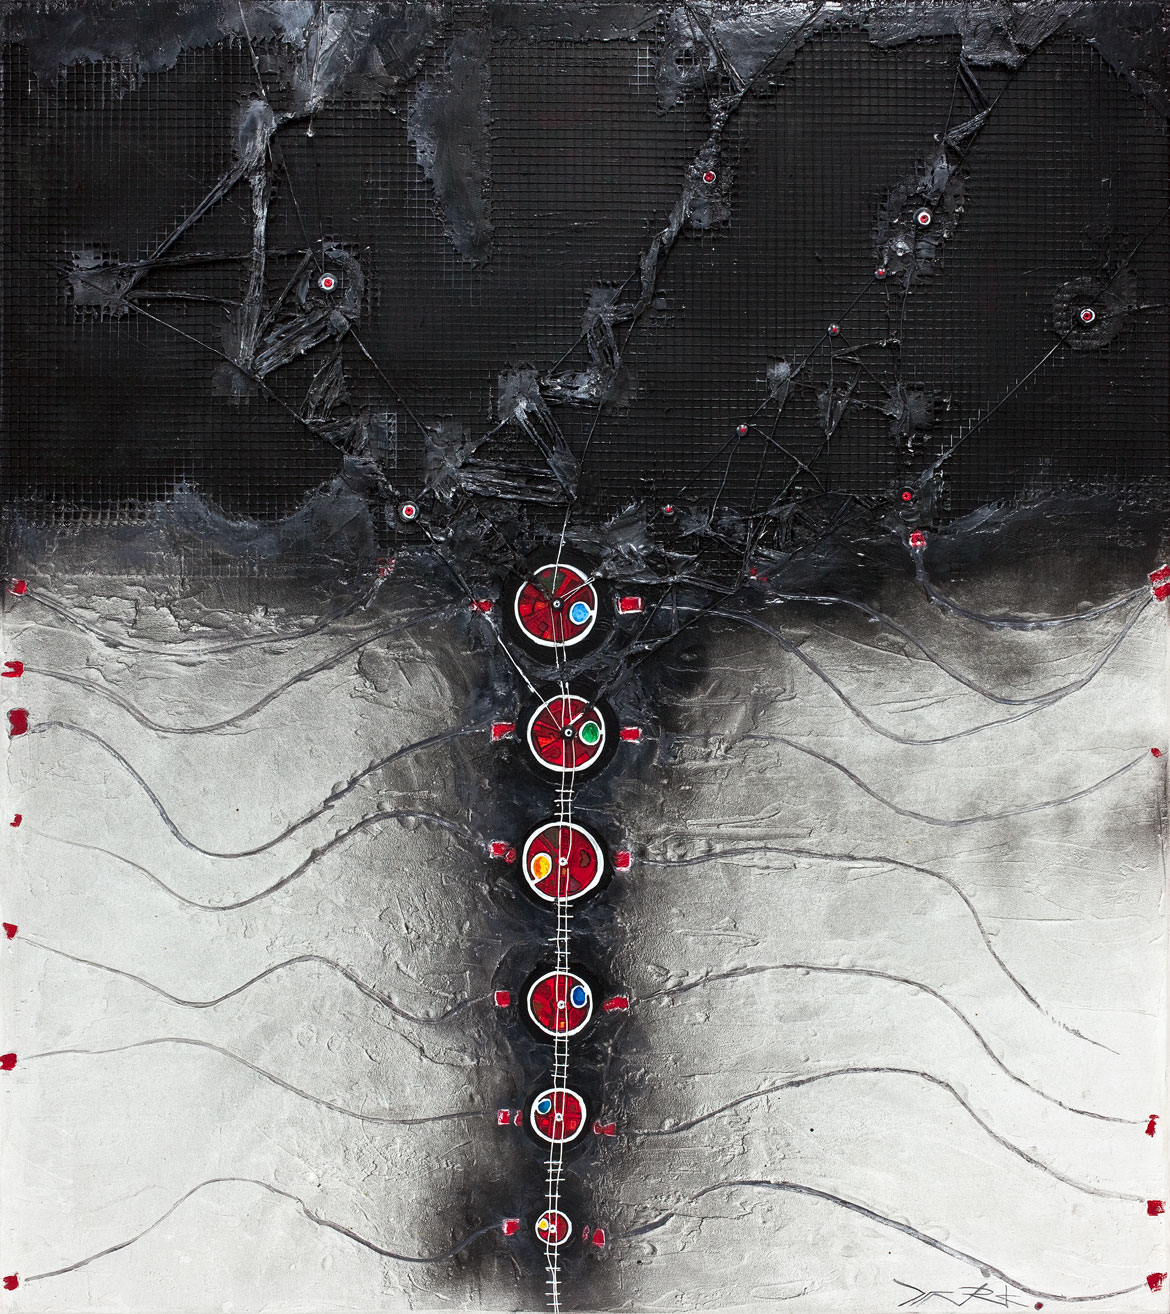 Himalia "Arnold layne's buttons bridge" abstractions interstellaires Acrylique sur panneau alvéolaire